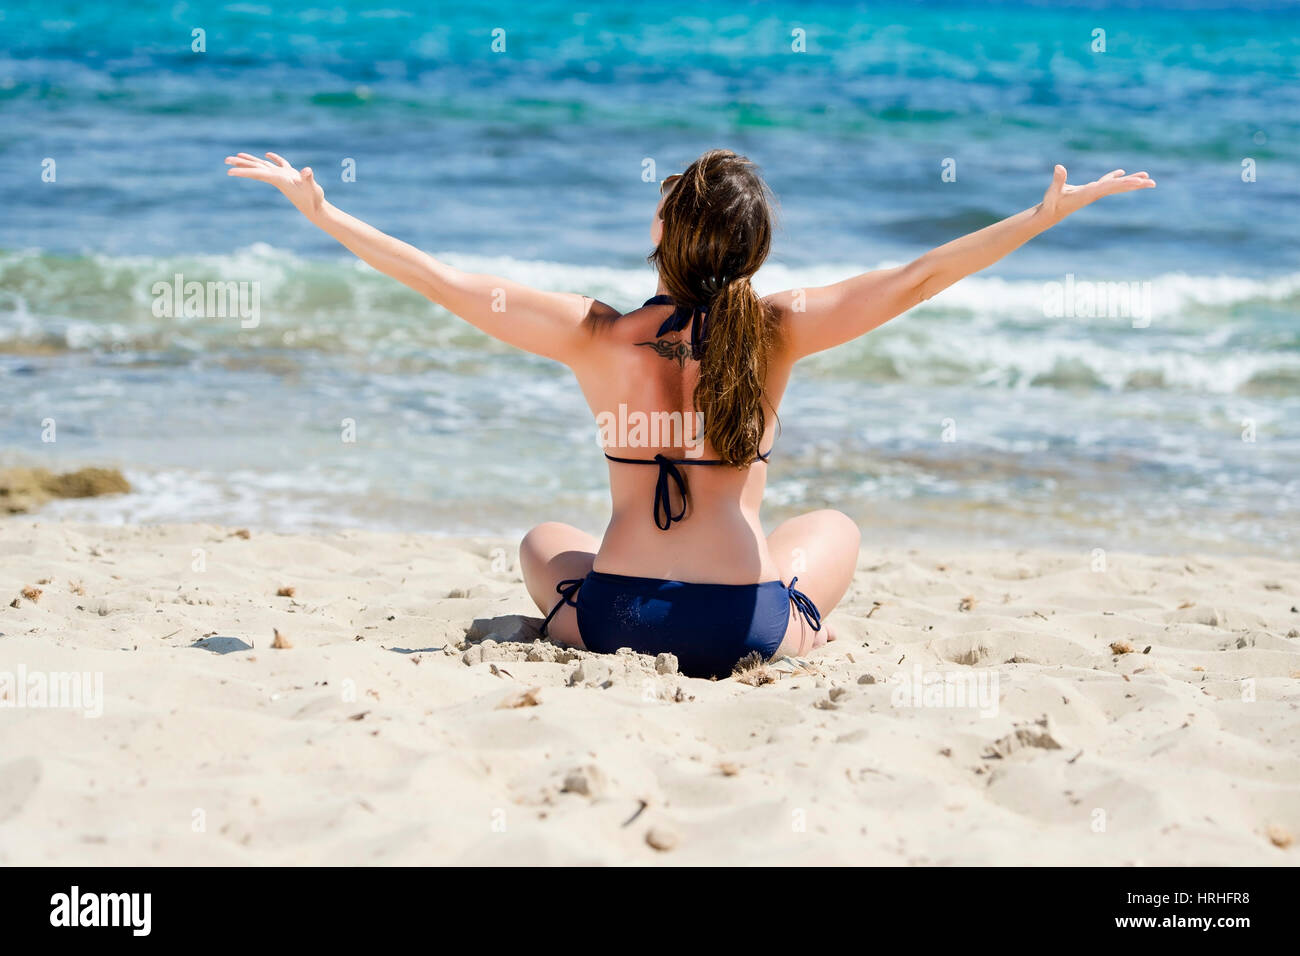 Frau im Bikini geniesst den Urlaub am Strand, Ibiza, Spanien - mujer hace  que las vacaciones en la playa, Ibiza, España Fotografía de stock - Alamy